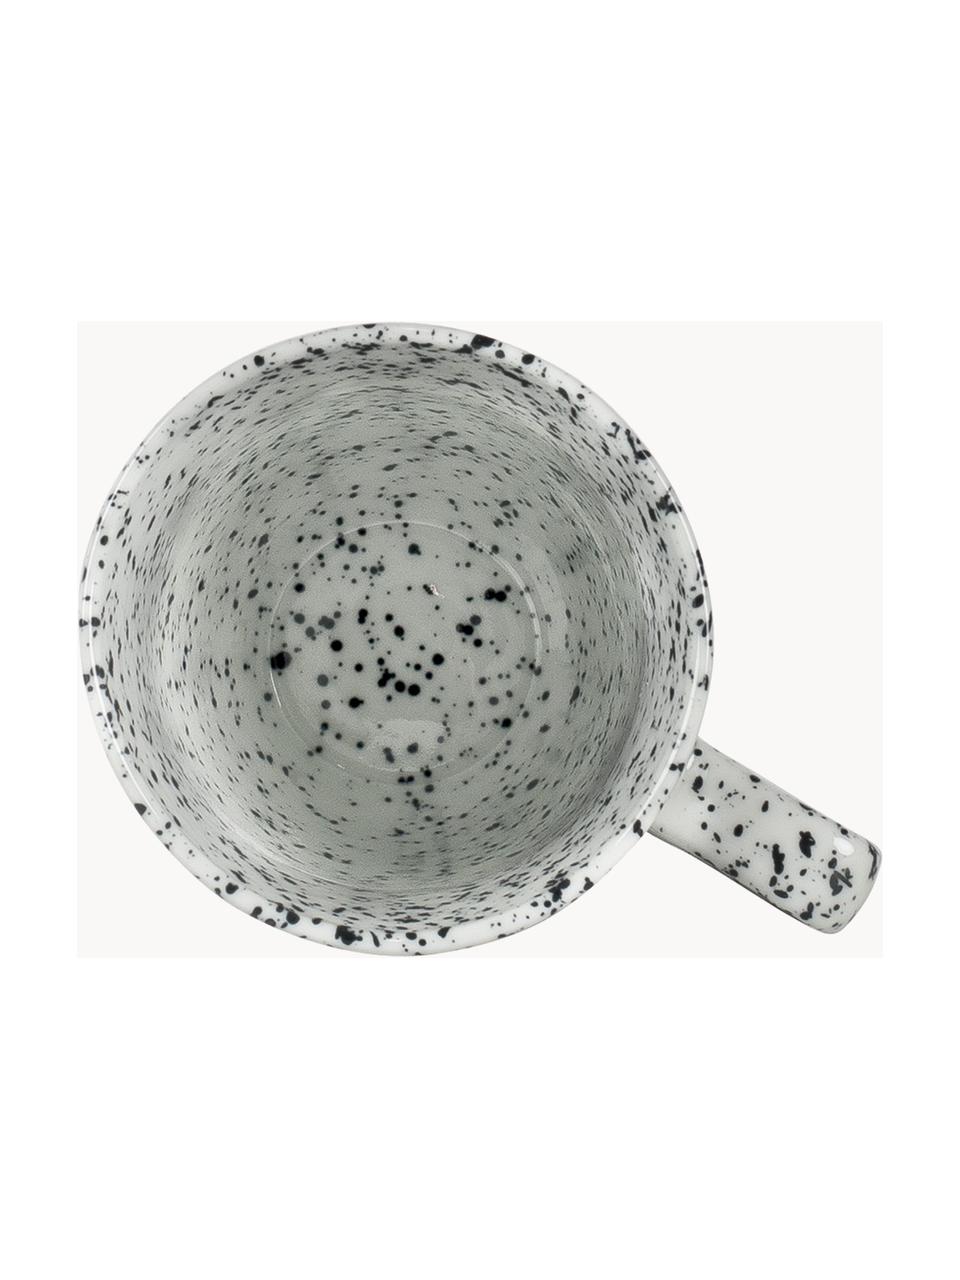 Porzellan-Tassen Poppi, 2 Stück, Porzellan, Weiß, schwarz gesprenkelt, Ø 8 x H 11 cm, 270 ml